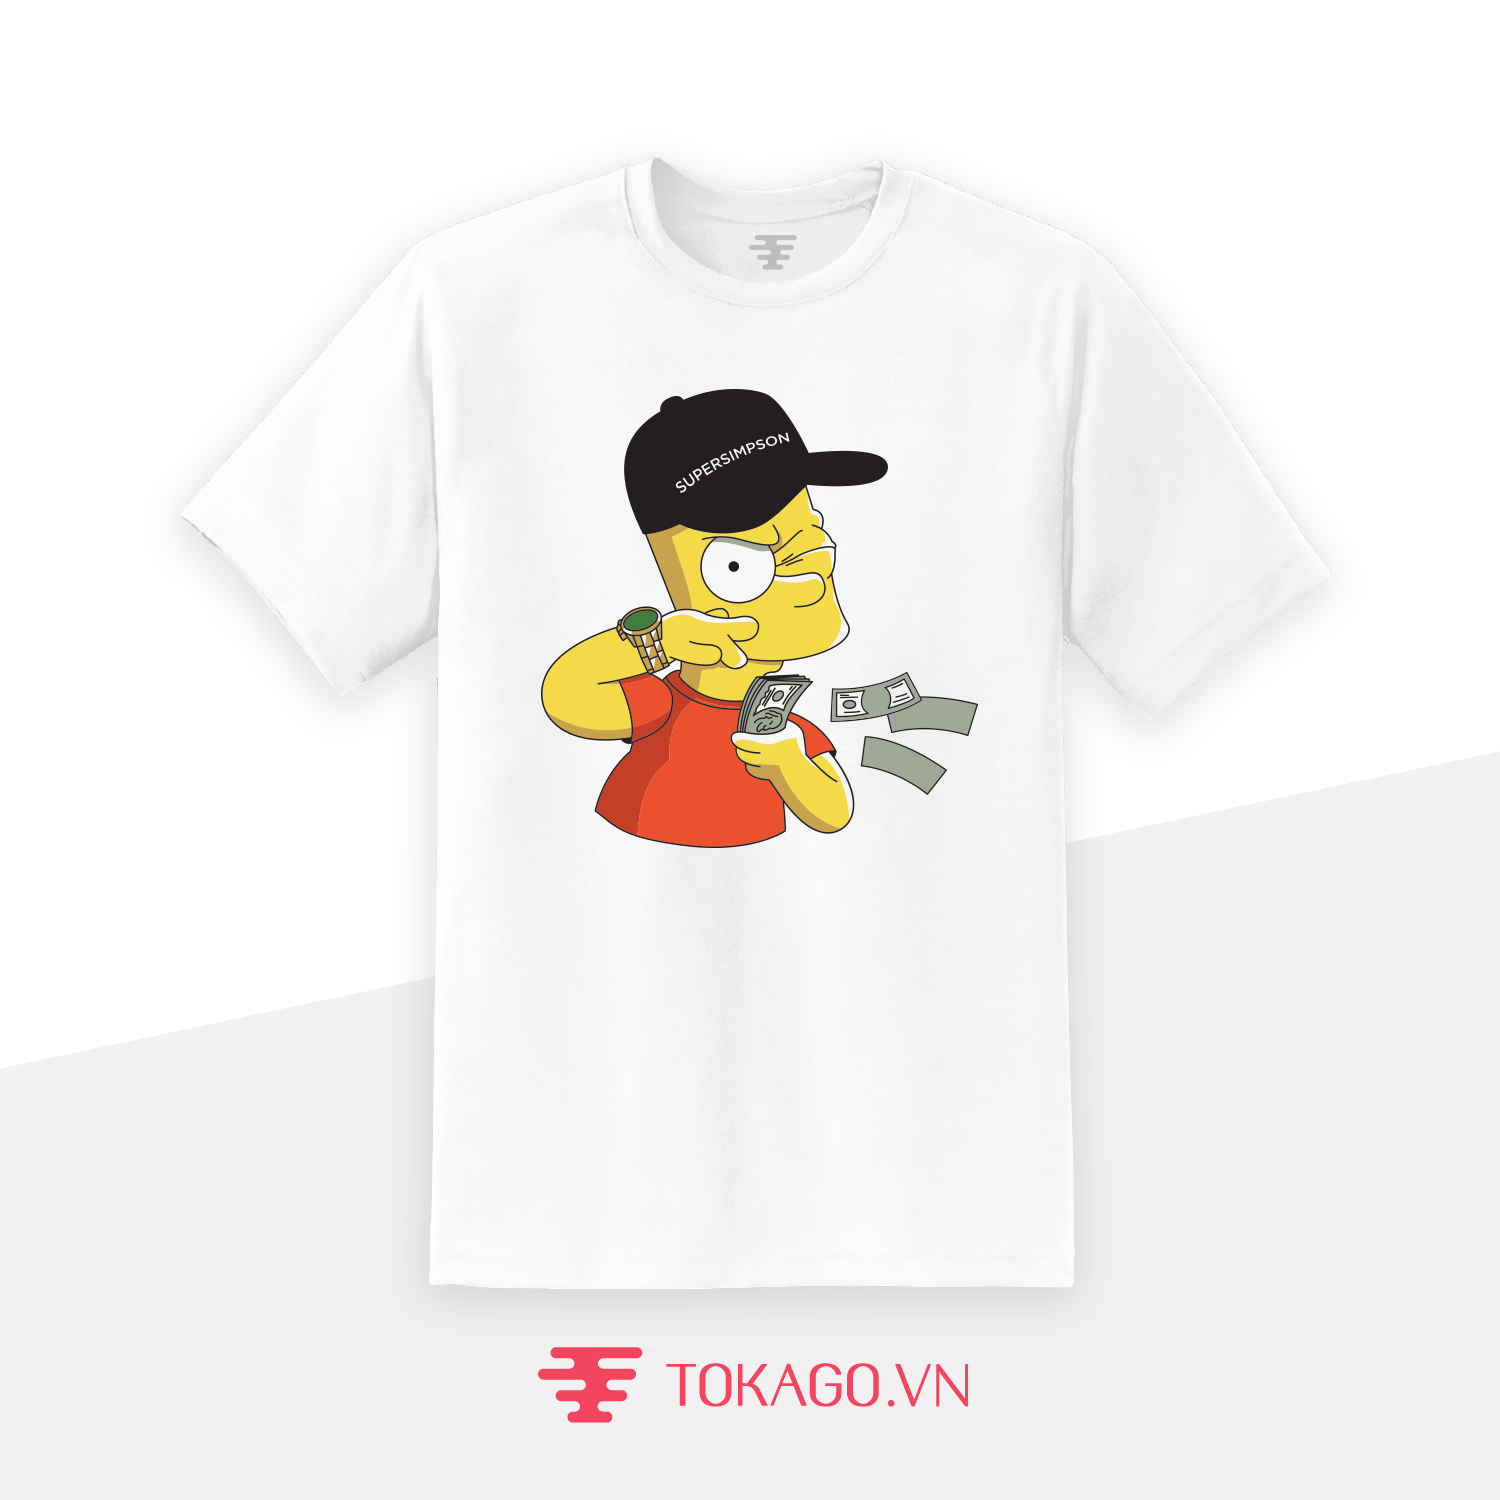 Super Simpson Tshirt